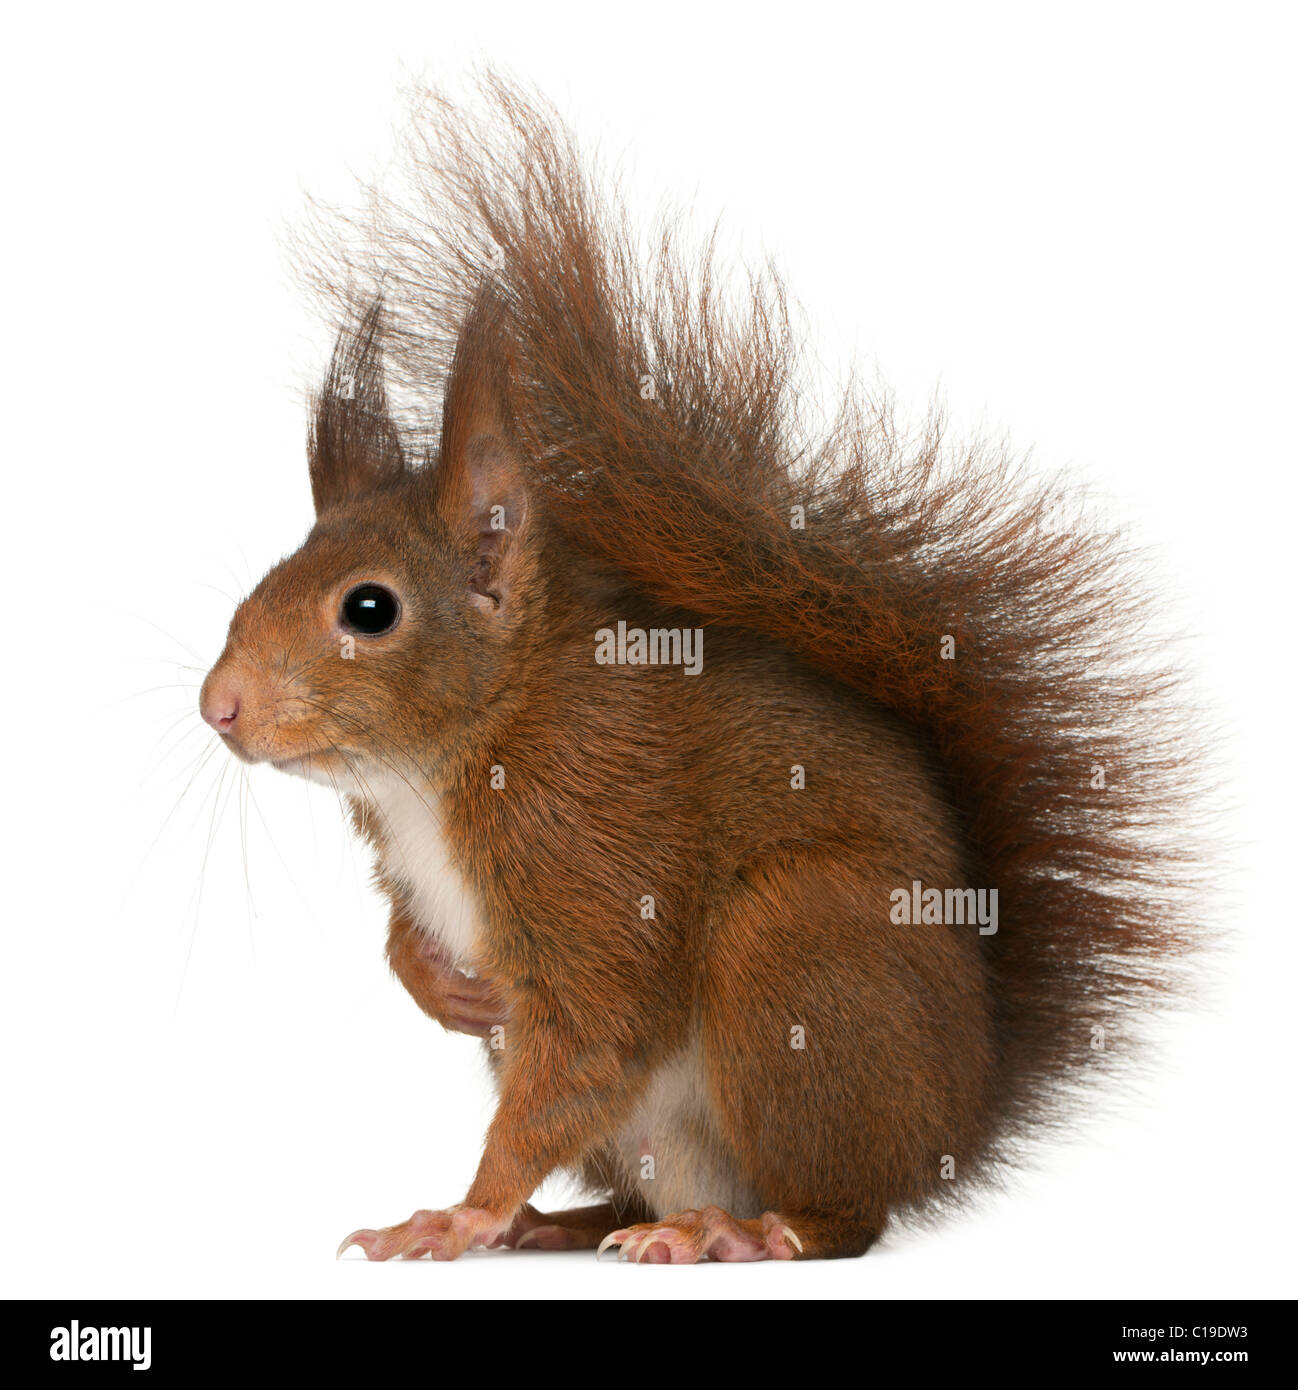 Eurasian scoiattolo rosso Sciurus vulgaris, 4 anni, di fronte a uno sfondo bianco Foto Stock